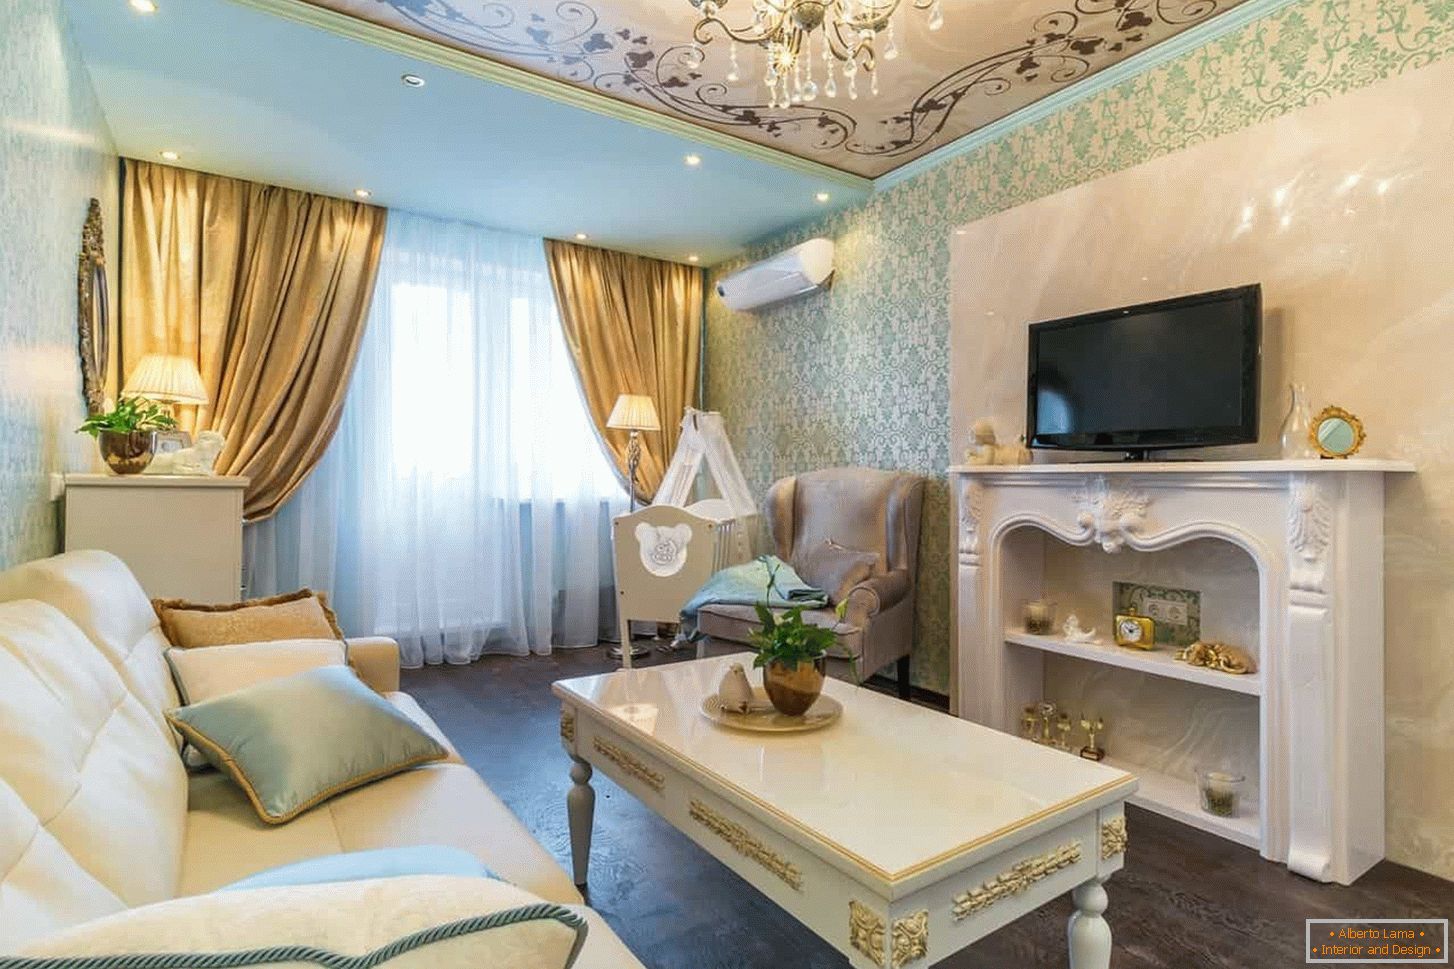 Sala de estar em estilo clássico com acabamento em ouro, ornamento do teto